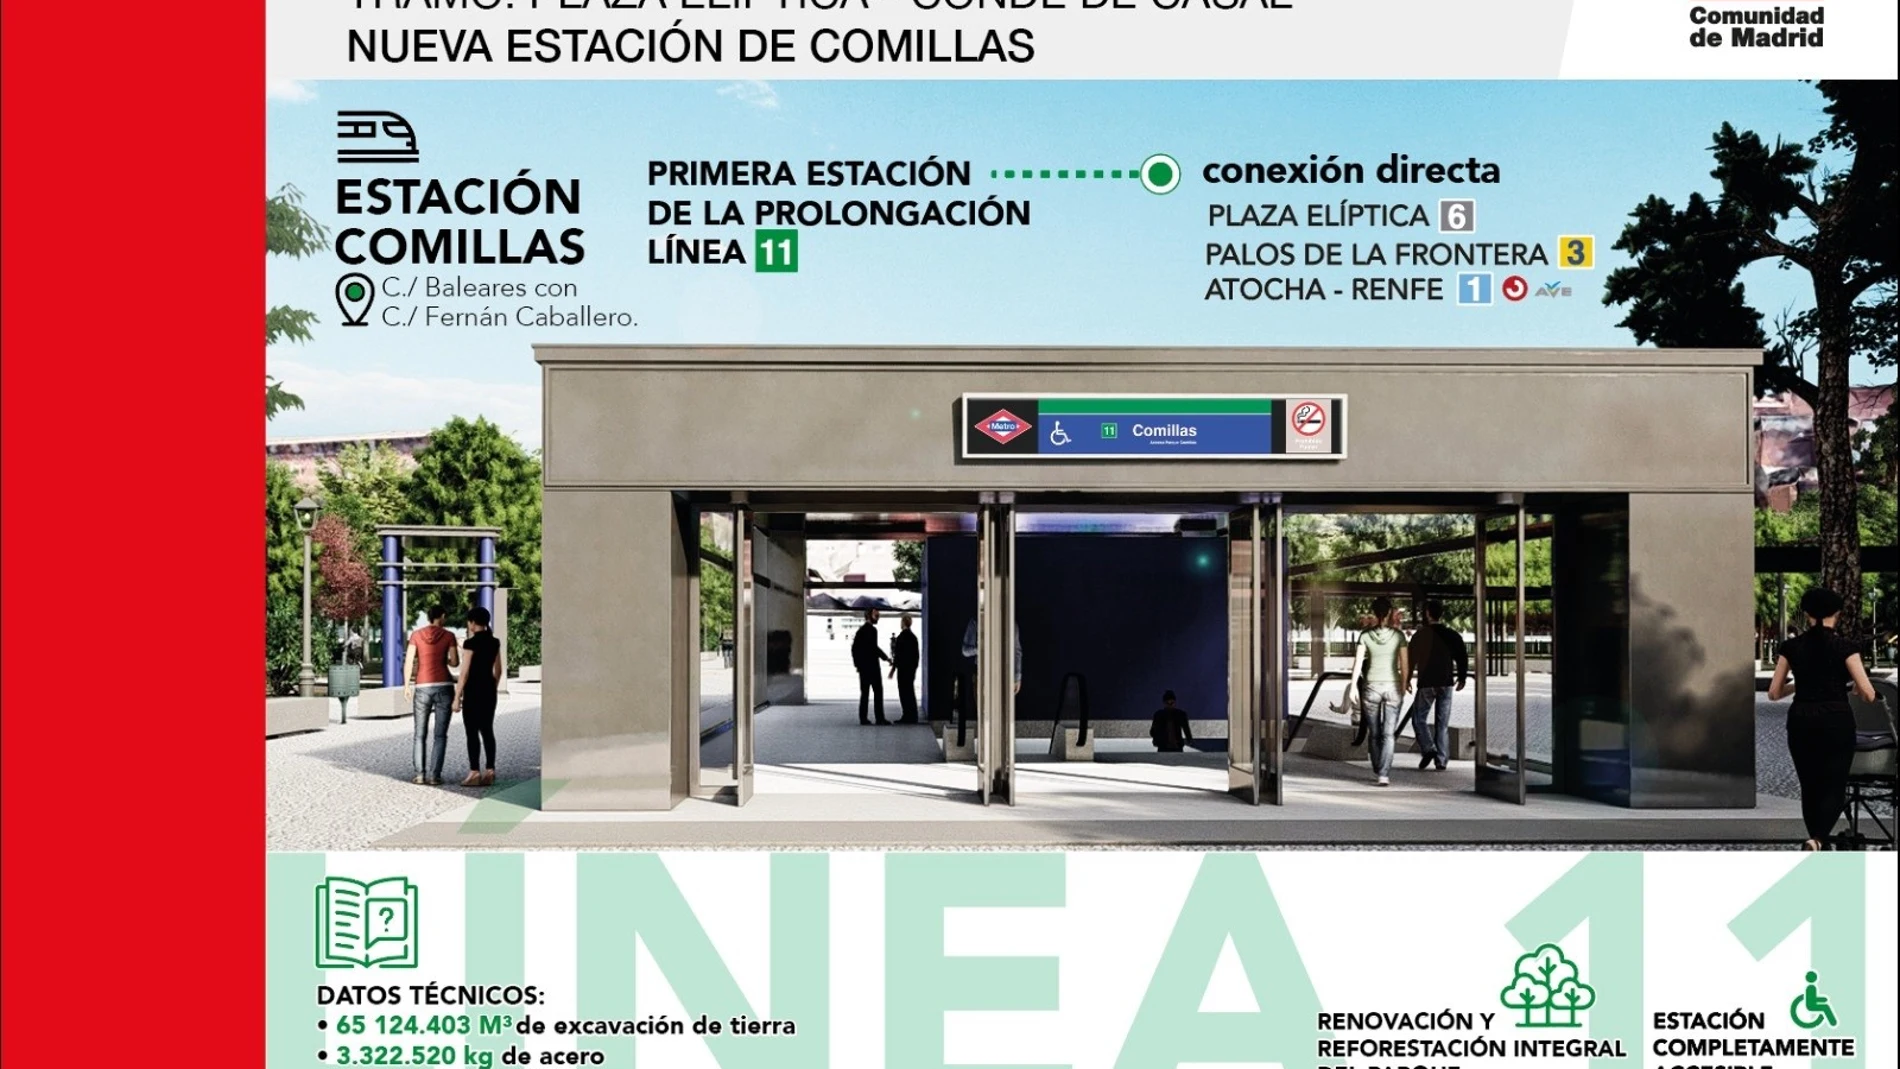 Ampliación de la Línea 11 de MetroCOMUNIDAD DE MADRID13/11/2022